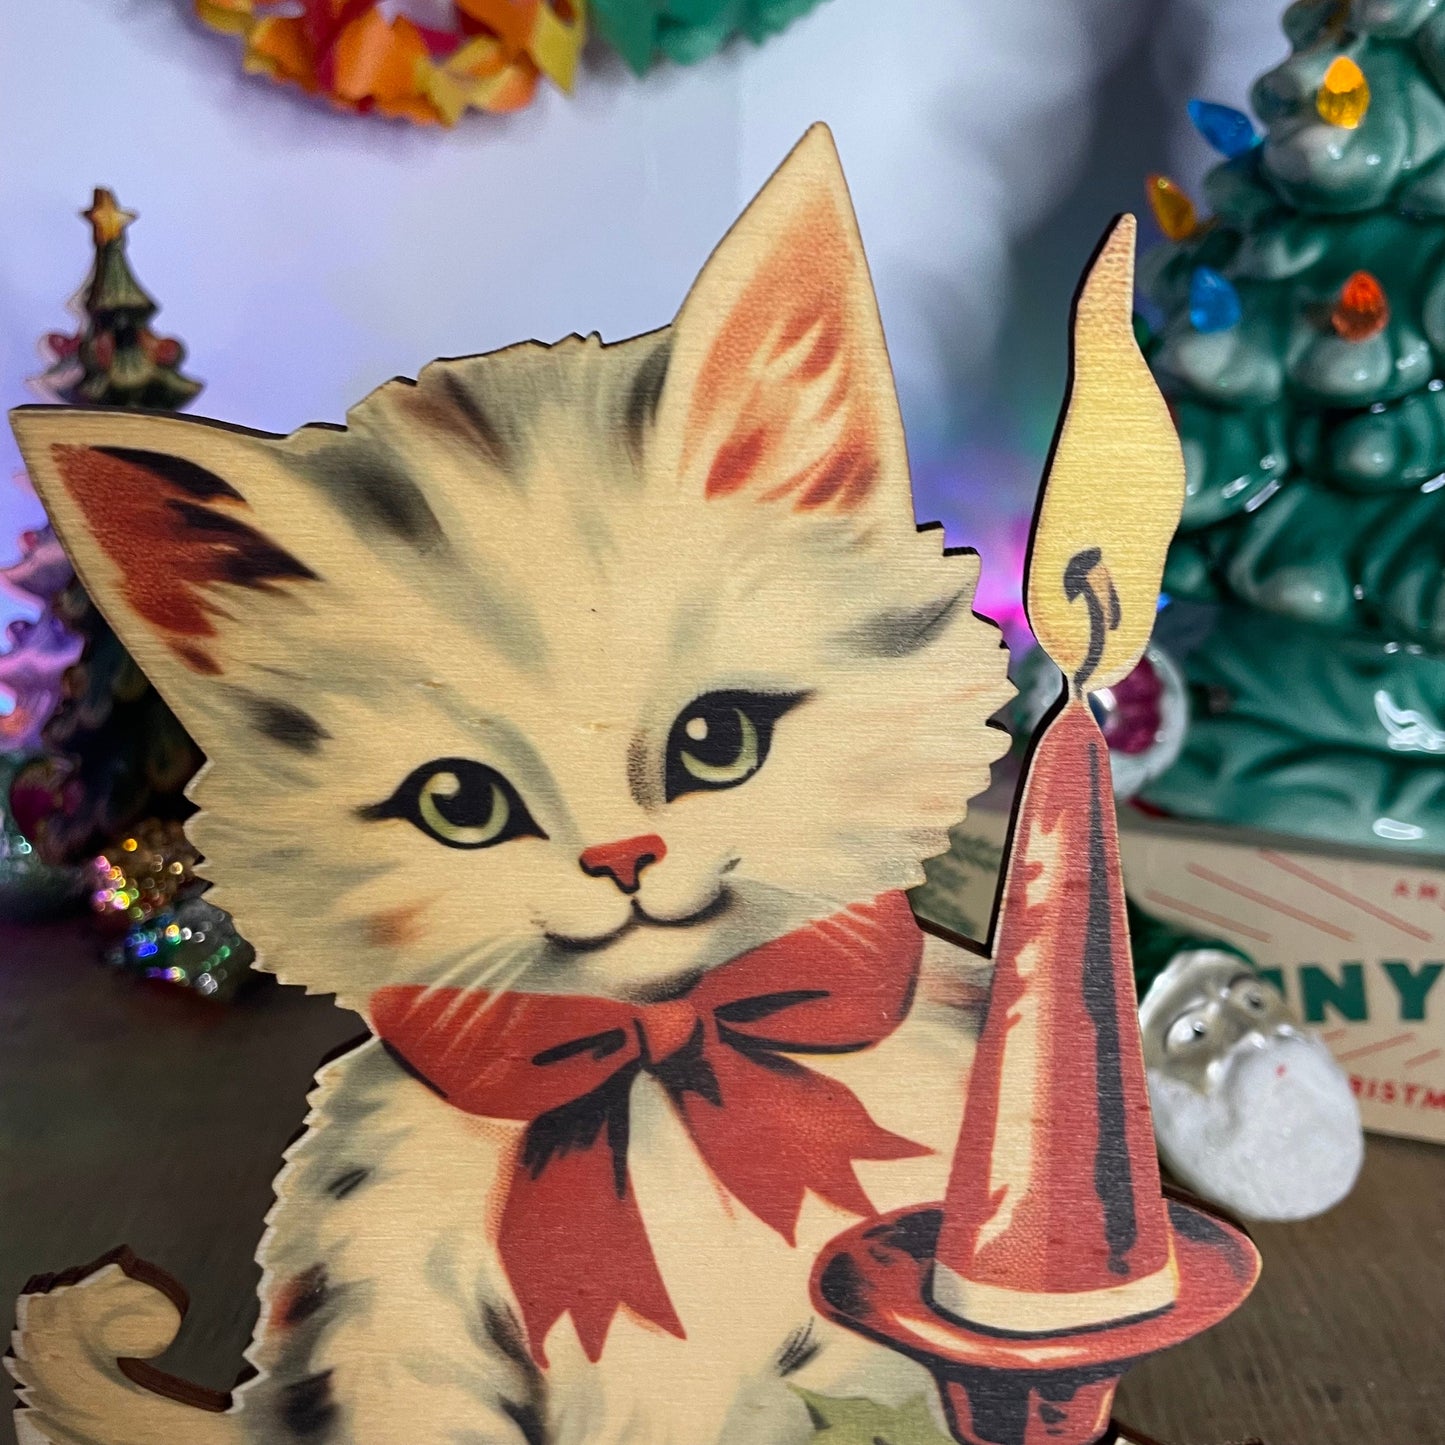 Vintage Christmas Cat Decoration wooden ornament, holiday decor, christmas decor laser cut unique Christmas